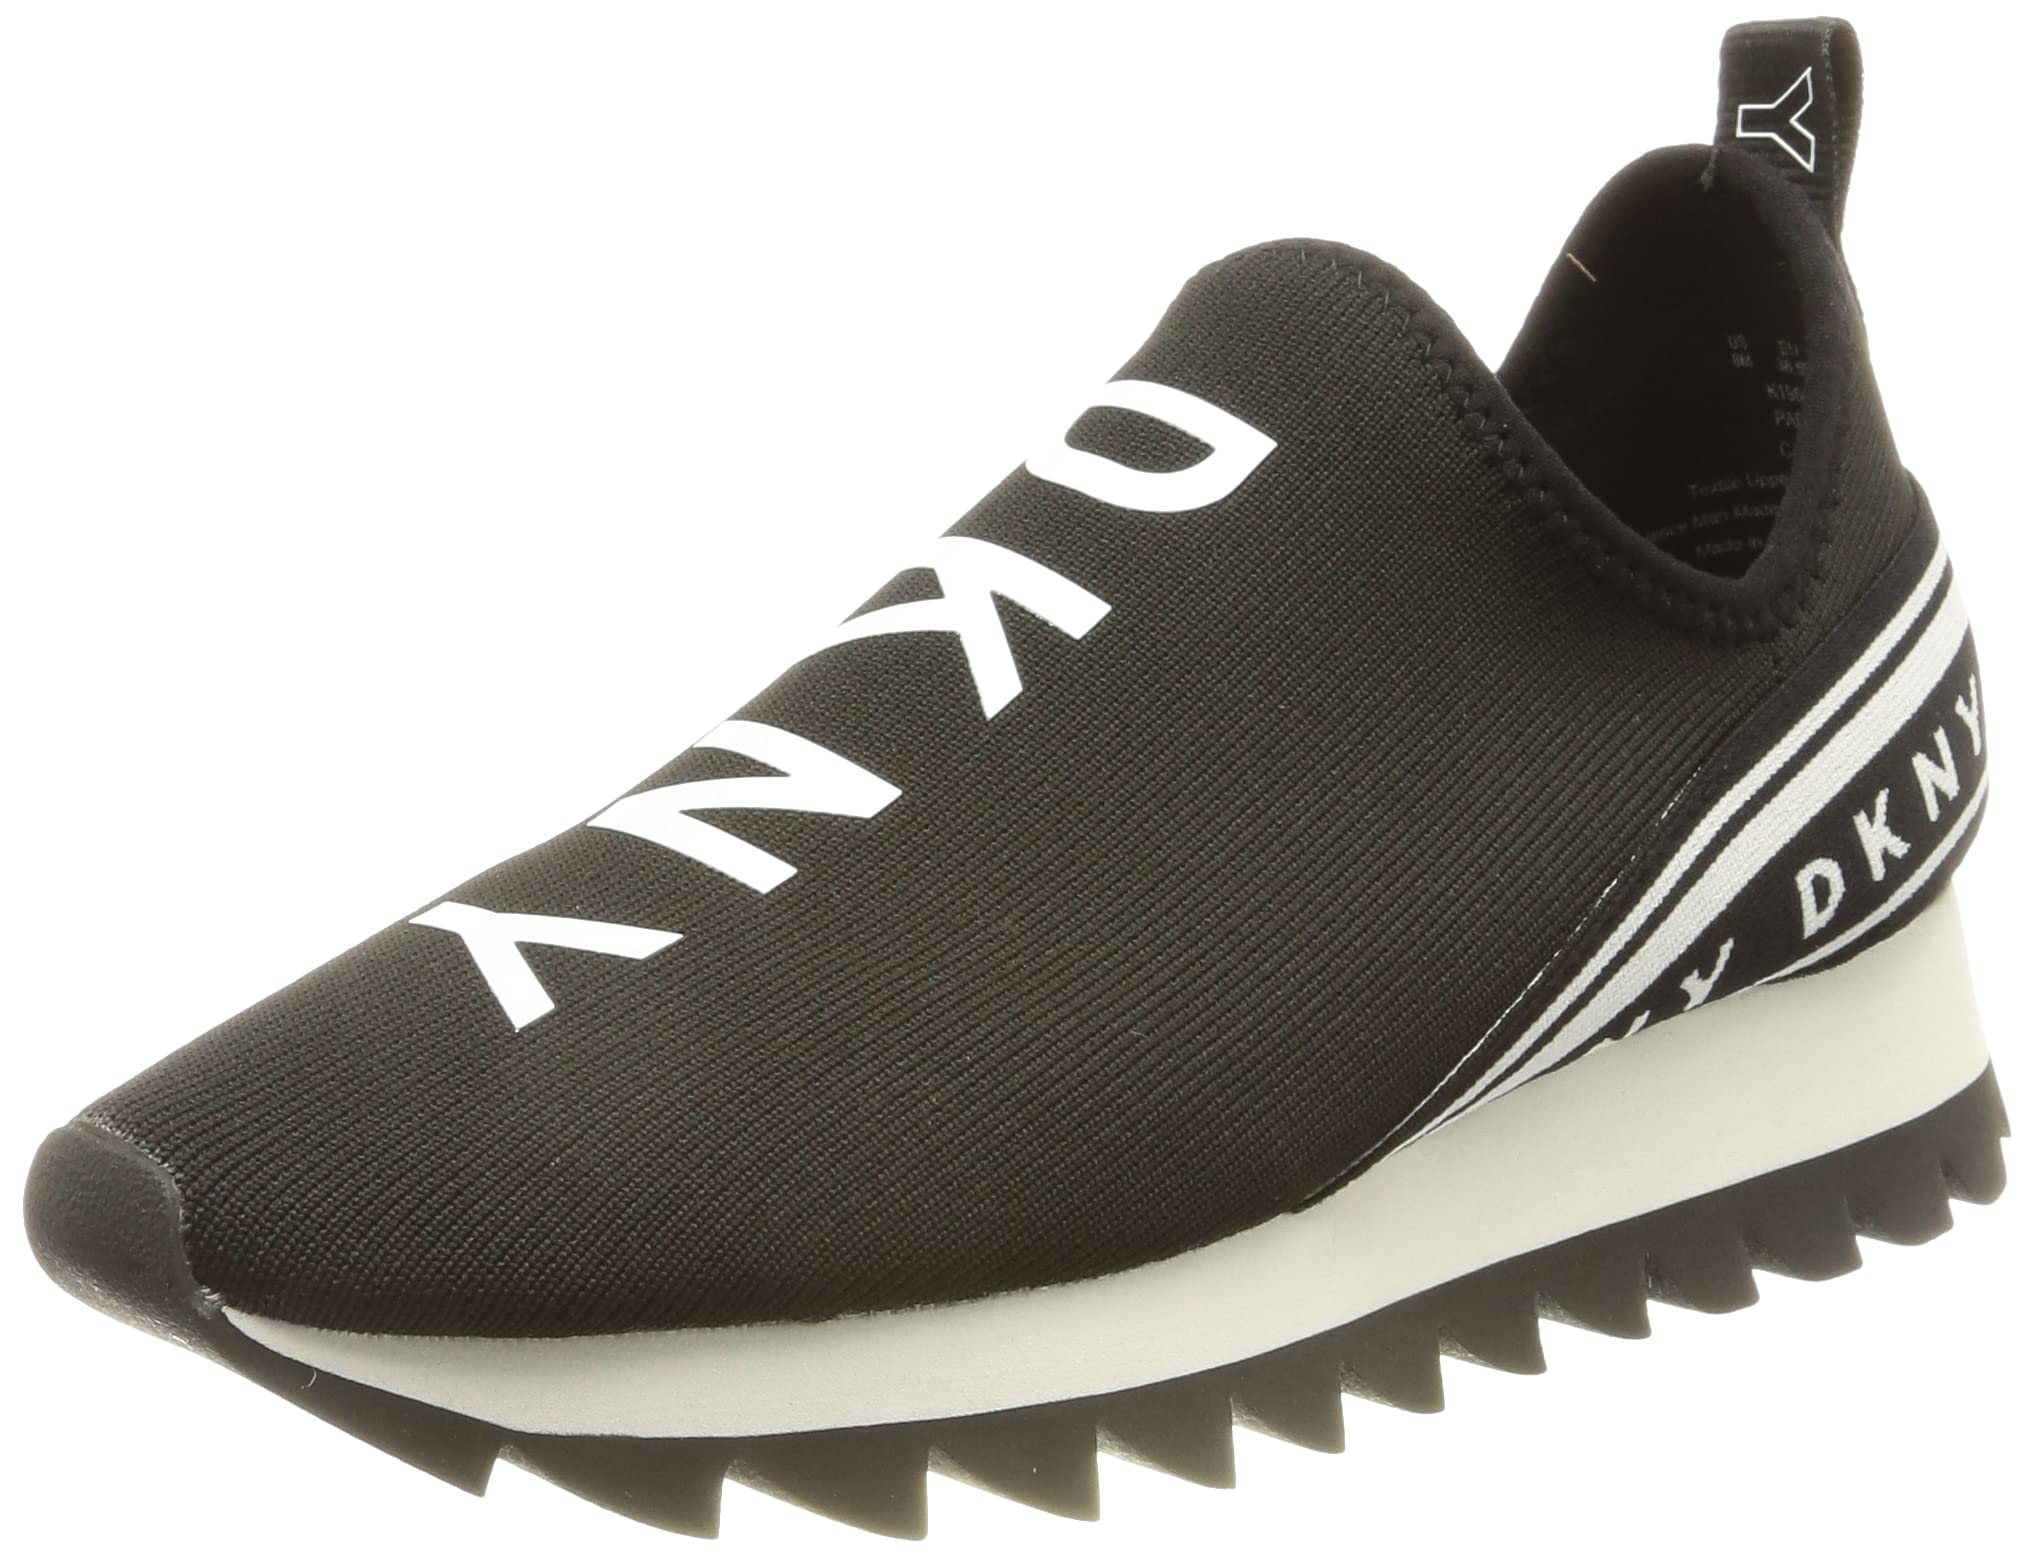 DKNY Women's Footwear ABBI - SLIP ON SNEAKER,BLACK, 8